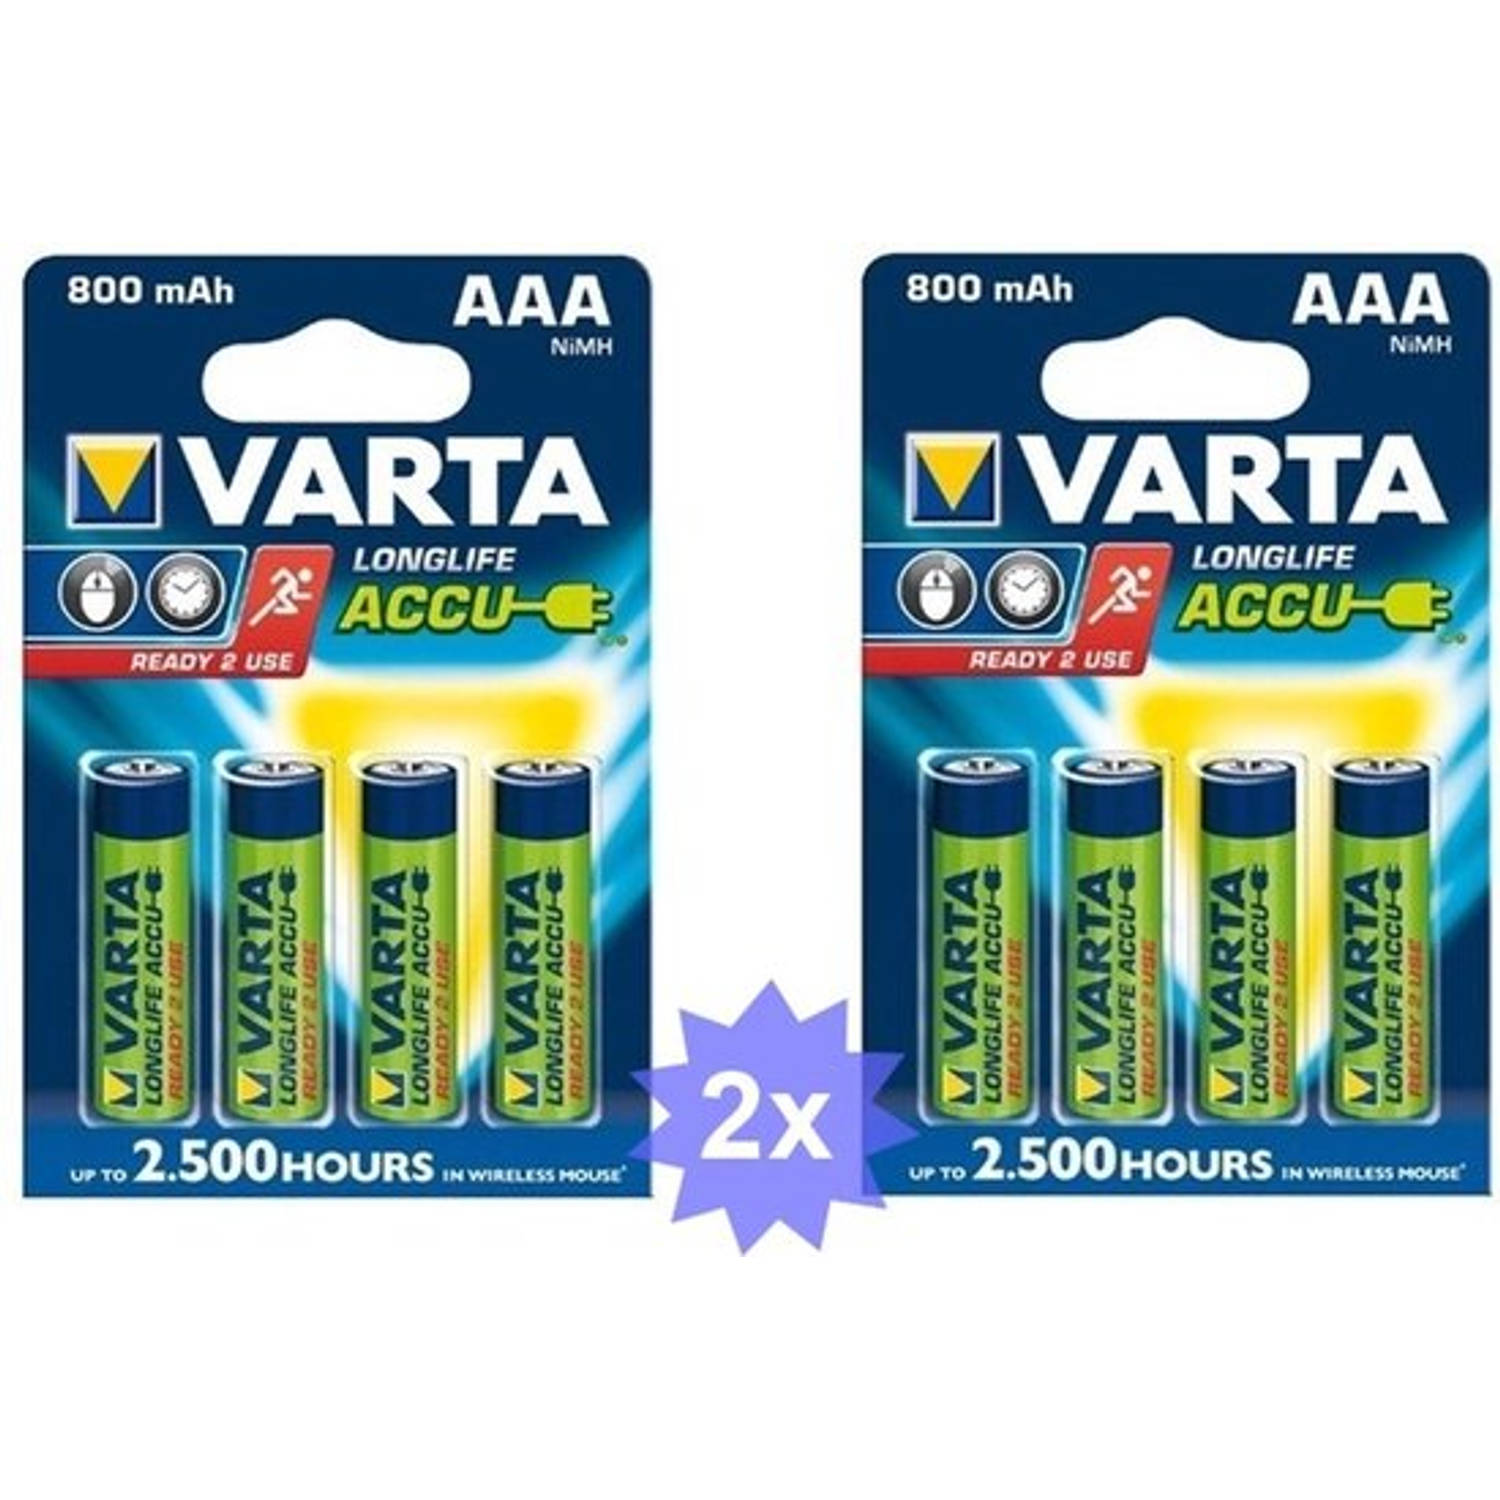 Tientallen Zeldzaamheid Gezichtsvermogen Varta Oplaadbare batterij AAA HR3 800mAh - 8 Stuks (2 Blisters a 4st) |  Blokker